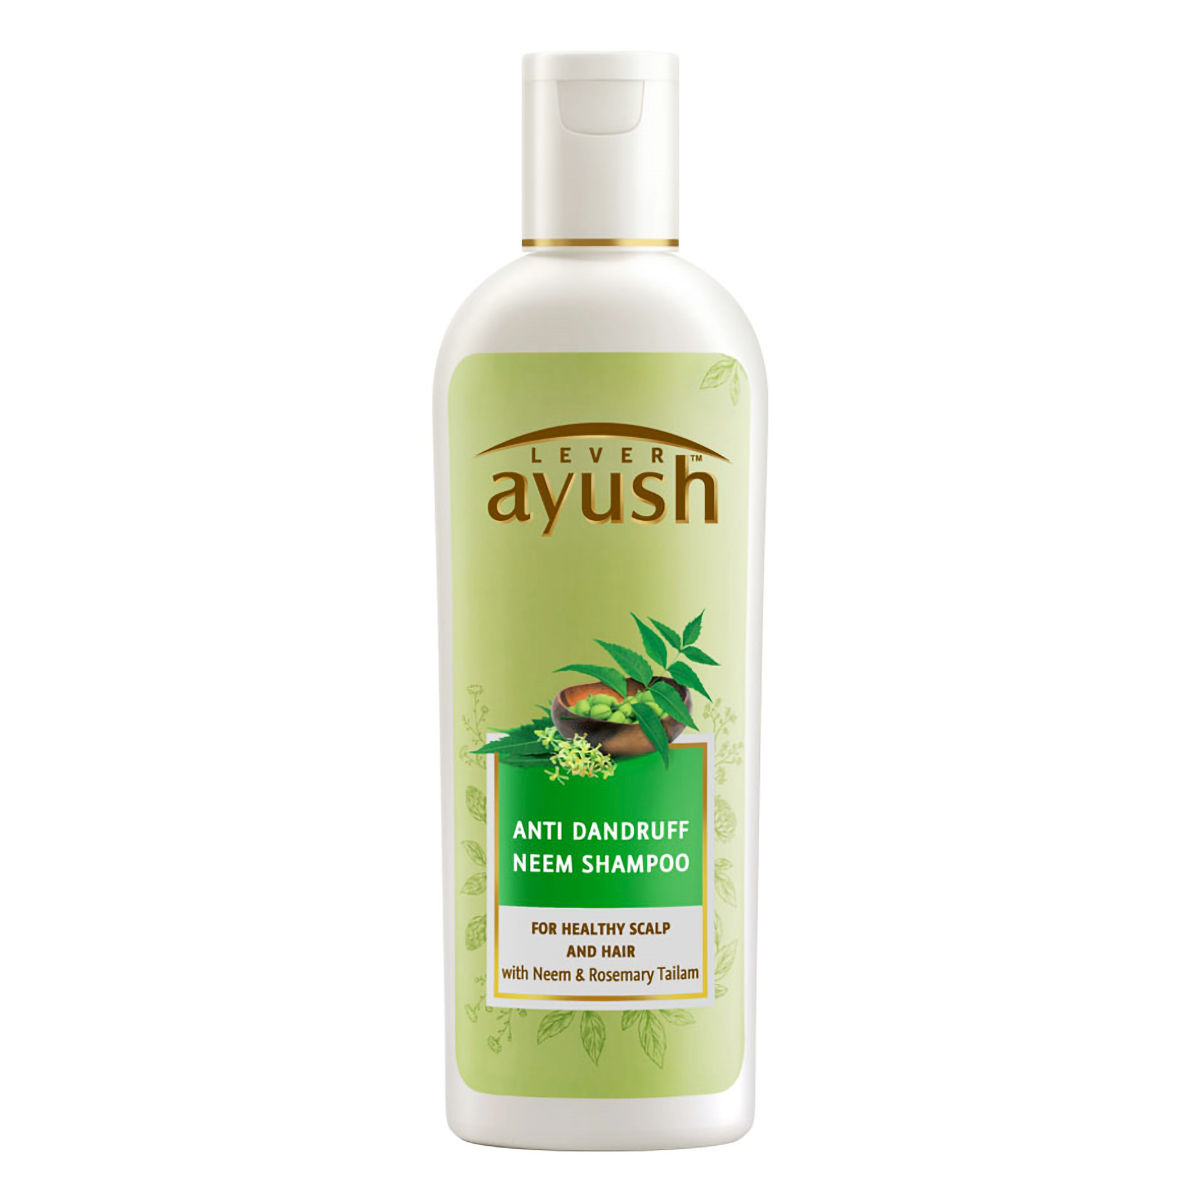 Buy Lever Ayush Anti Dandruff Neem Shampoo, 175 ml Online